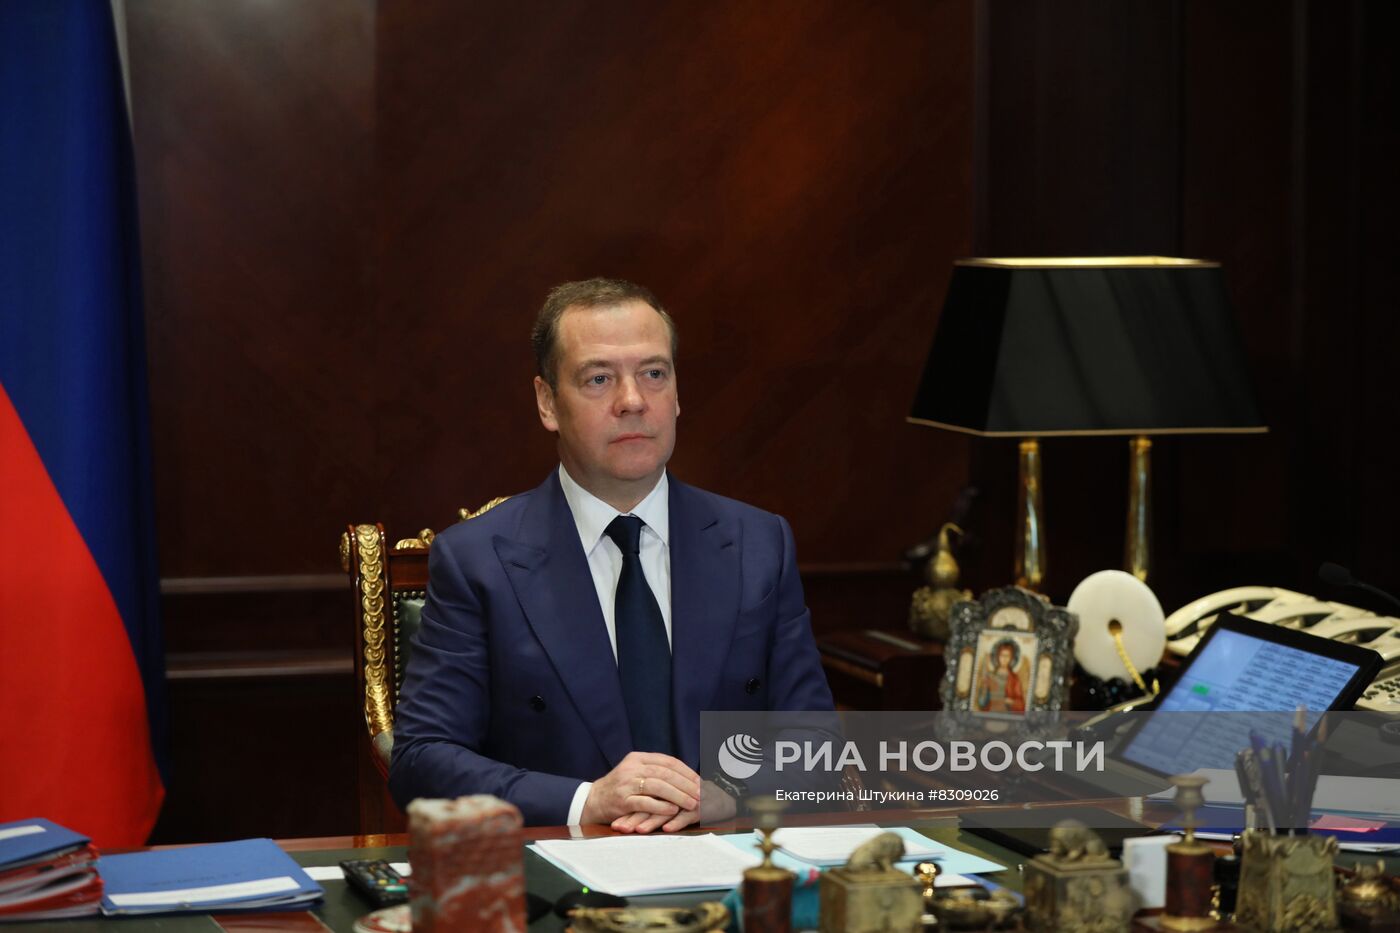 Зампред Совбеза РФ Д. Медведев встретился с президентом Республики Зимбабве Э. Мнангагвой